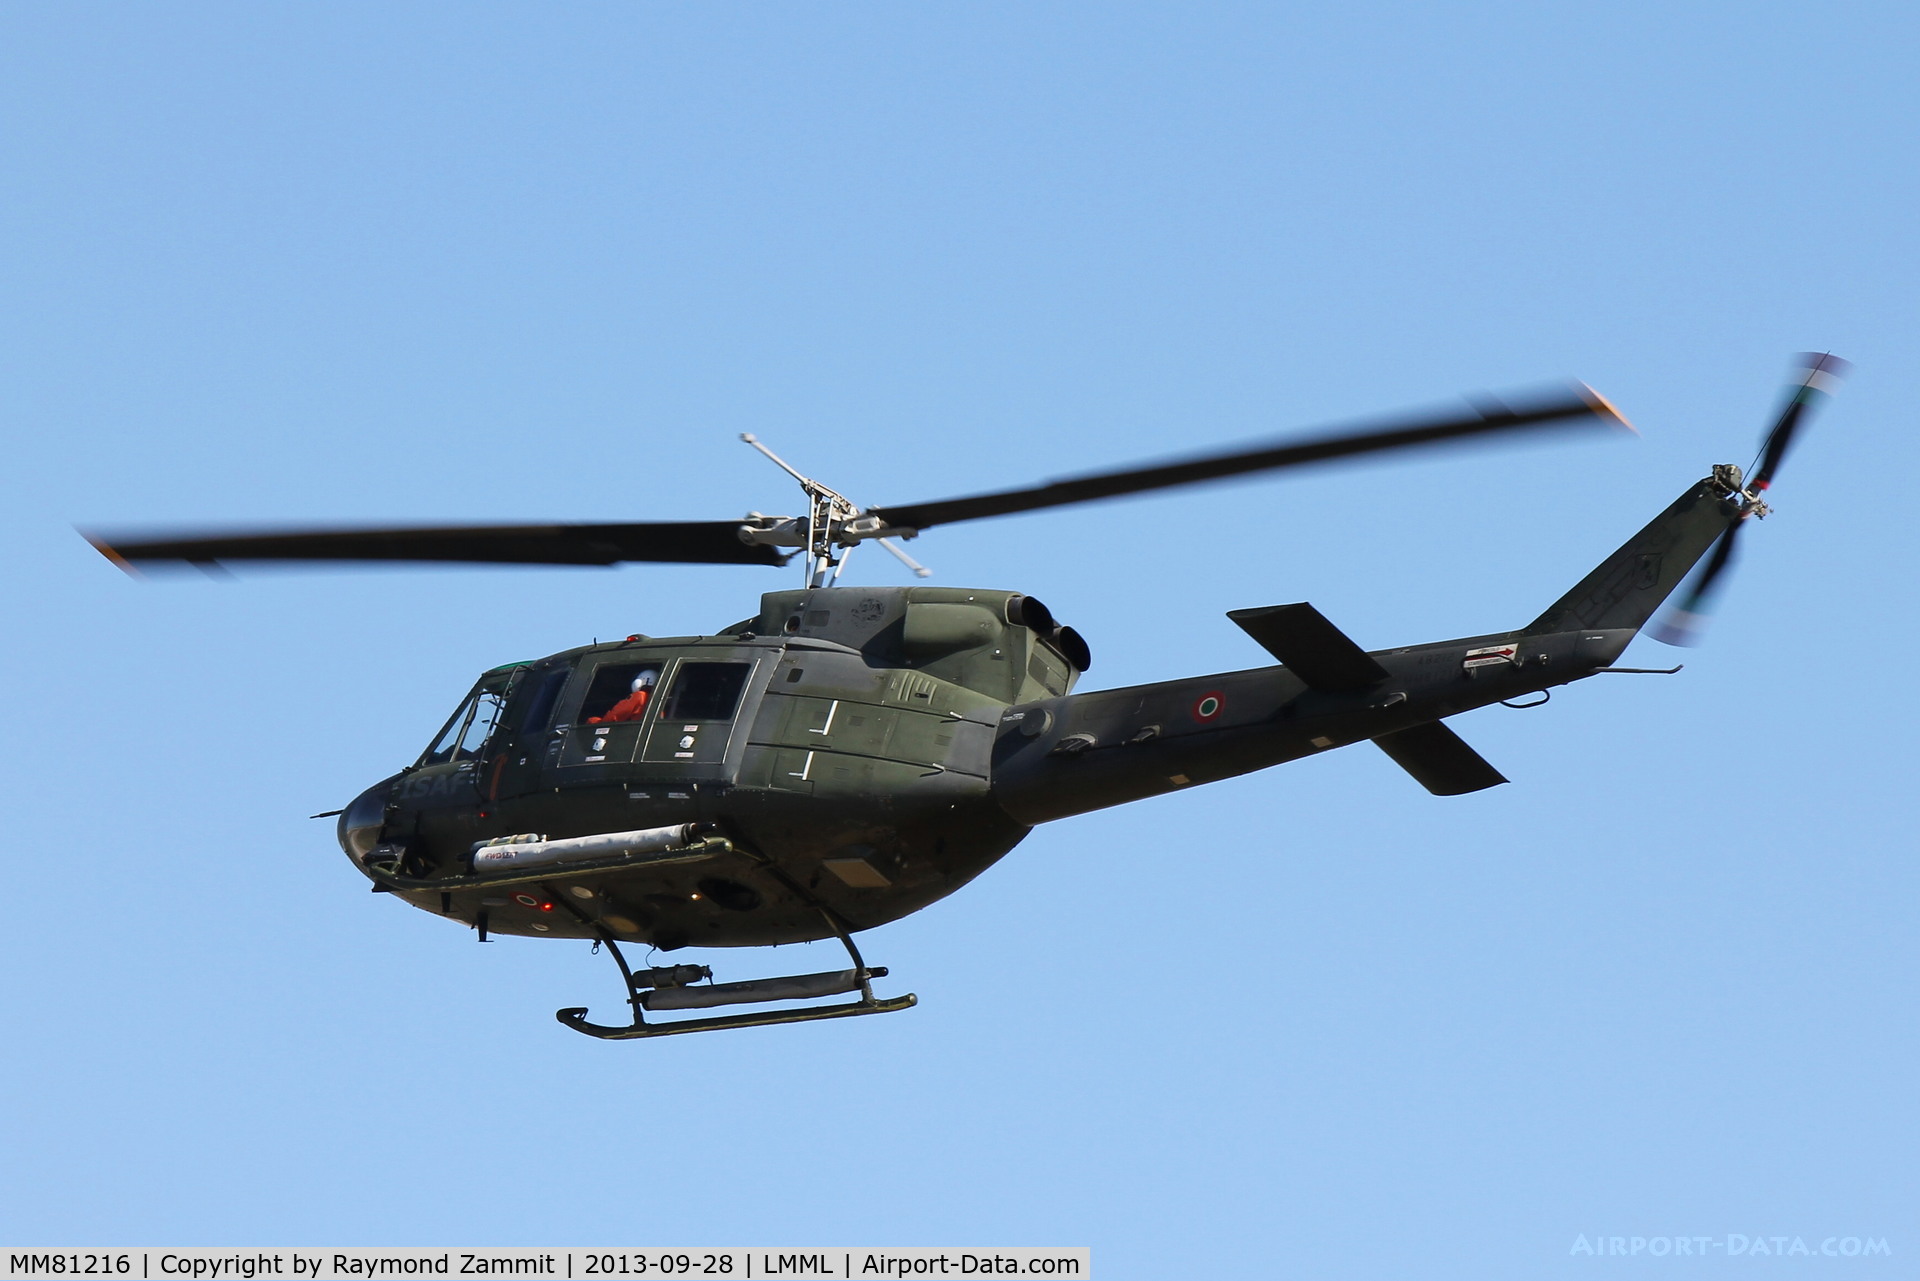 MM81216, Agusta-Bell AB-212AM C/N 5831, Agusta Bell AB212AM MM81216 Italian Air Force